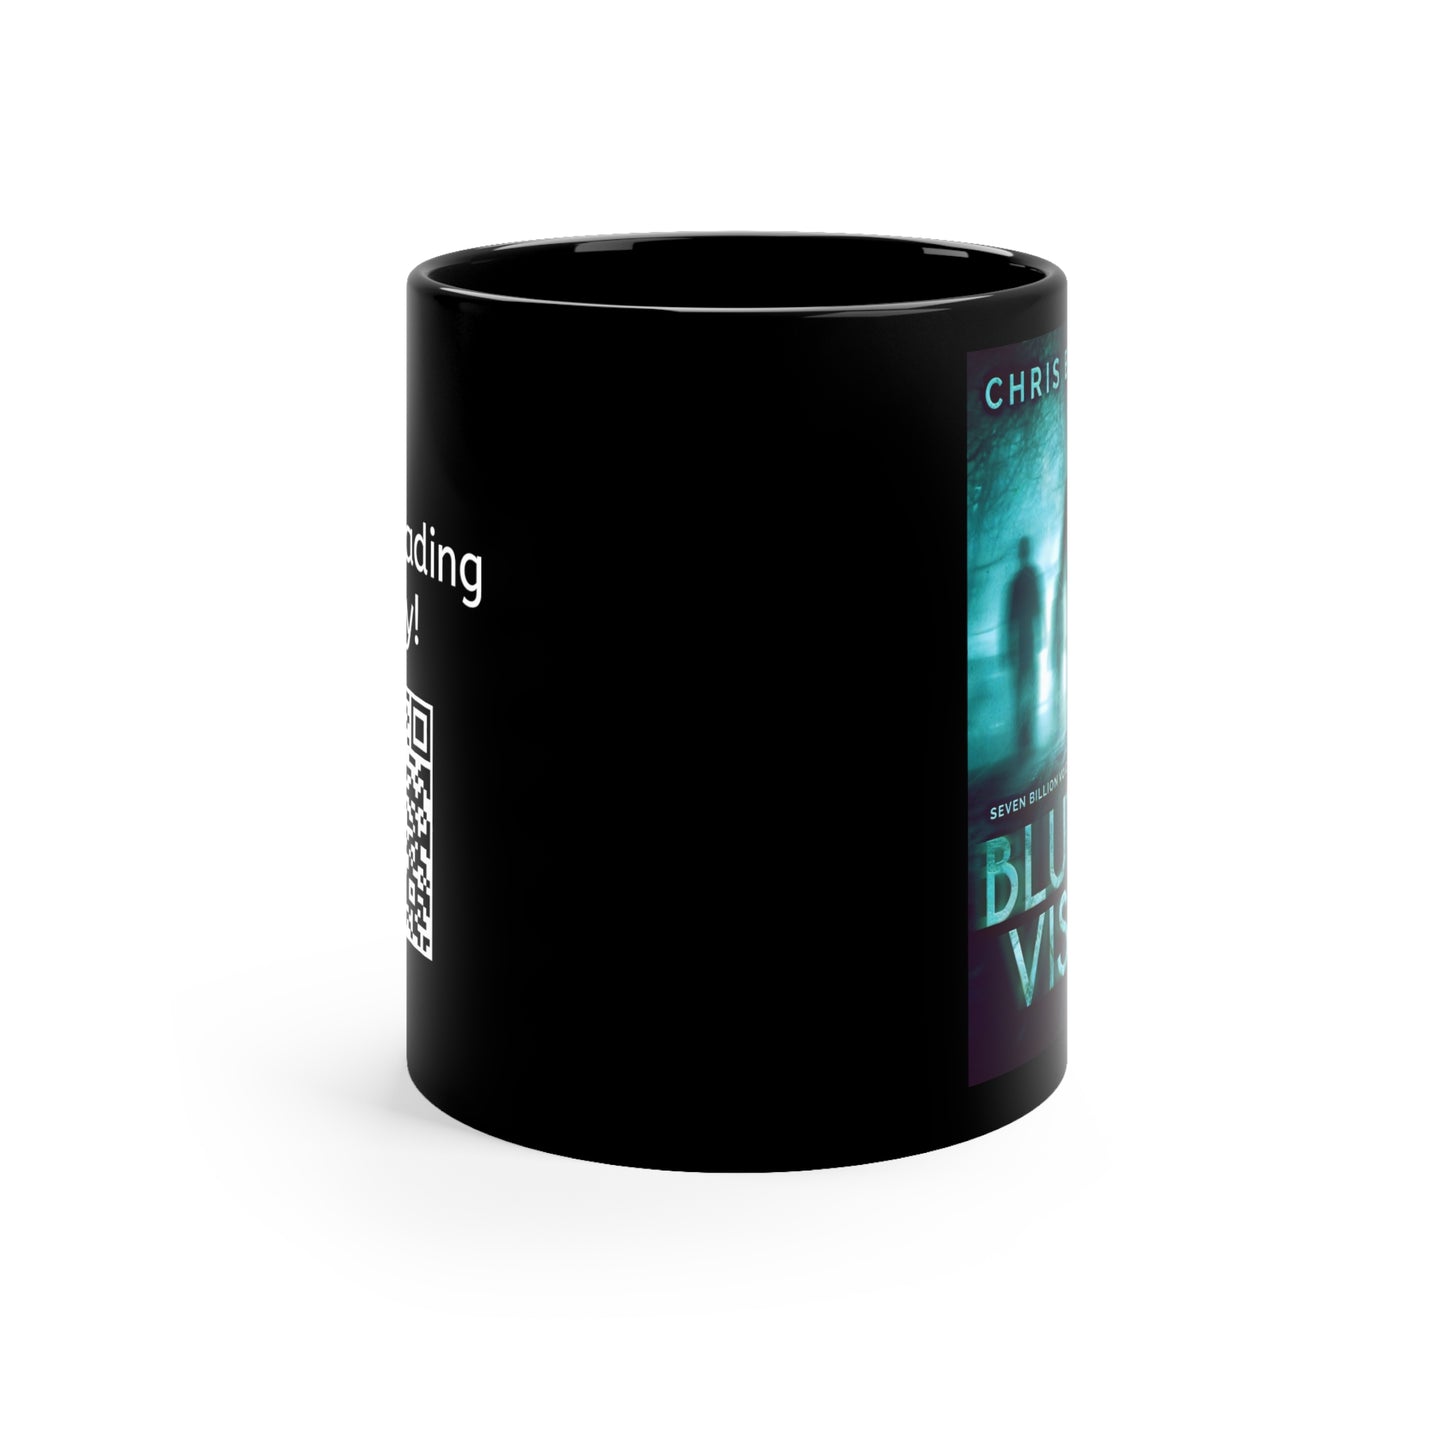 Blurred Vision - Black Coffee Mug